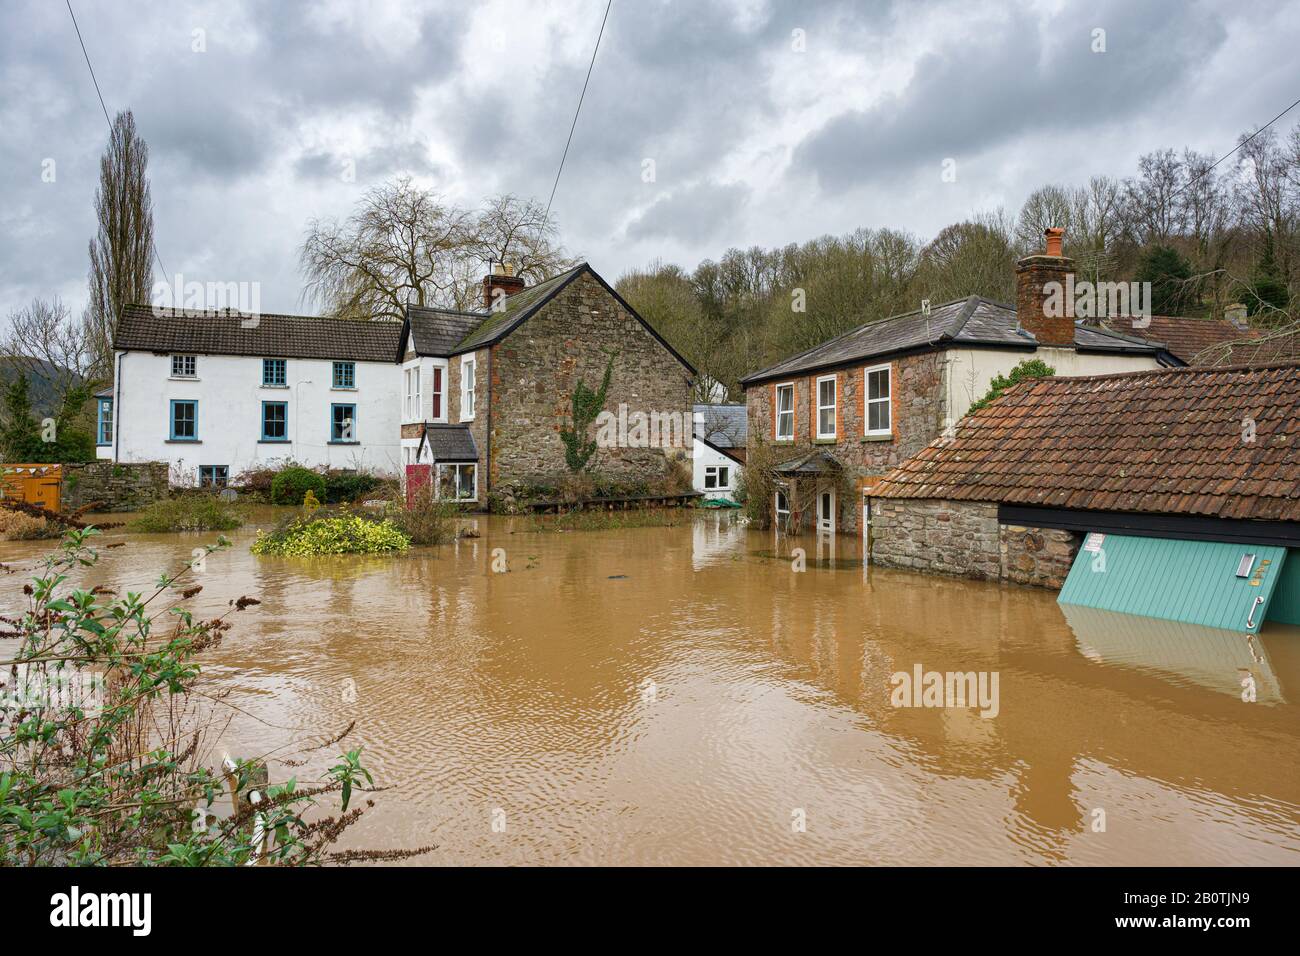 Les maisons en bord de rivière sont inondées alors que la rivière Wye continue de monter à la suite de fortes pluies. Février 2020. Banque D'Images